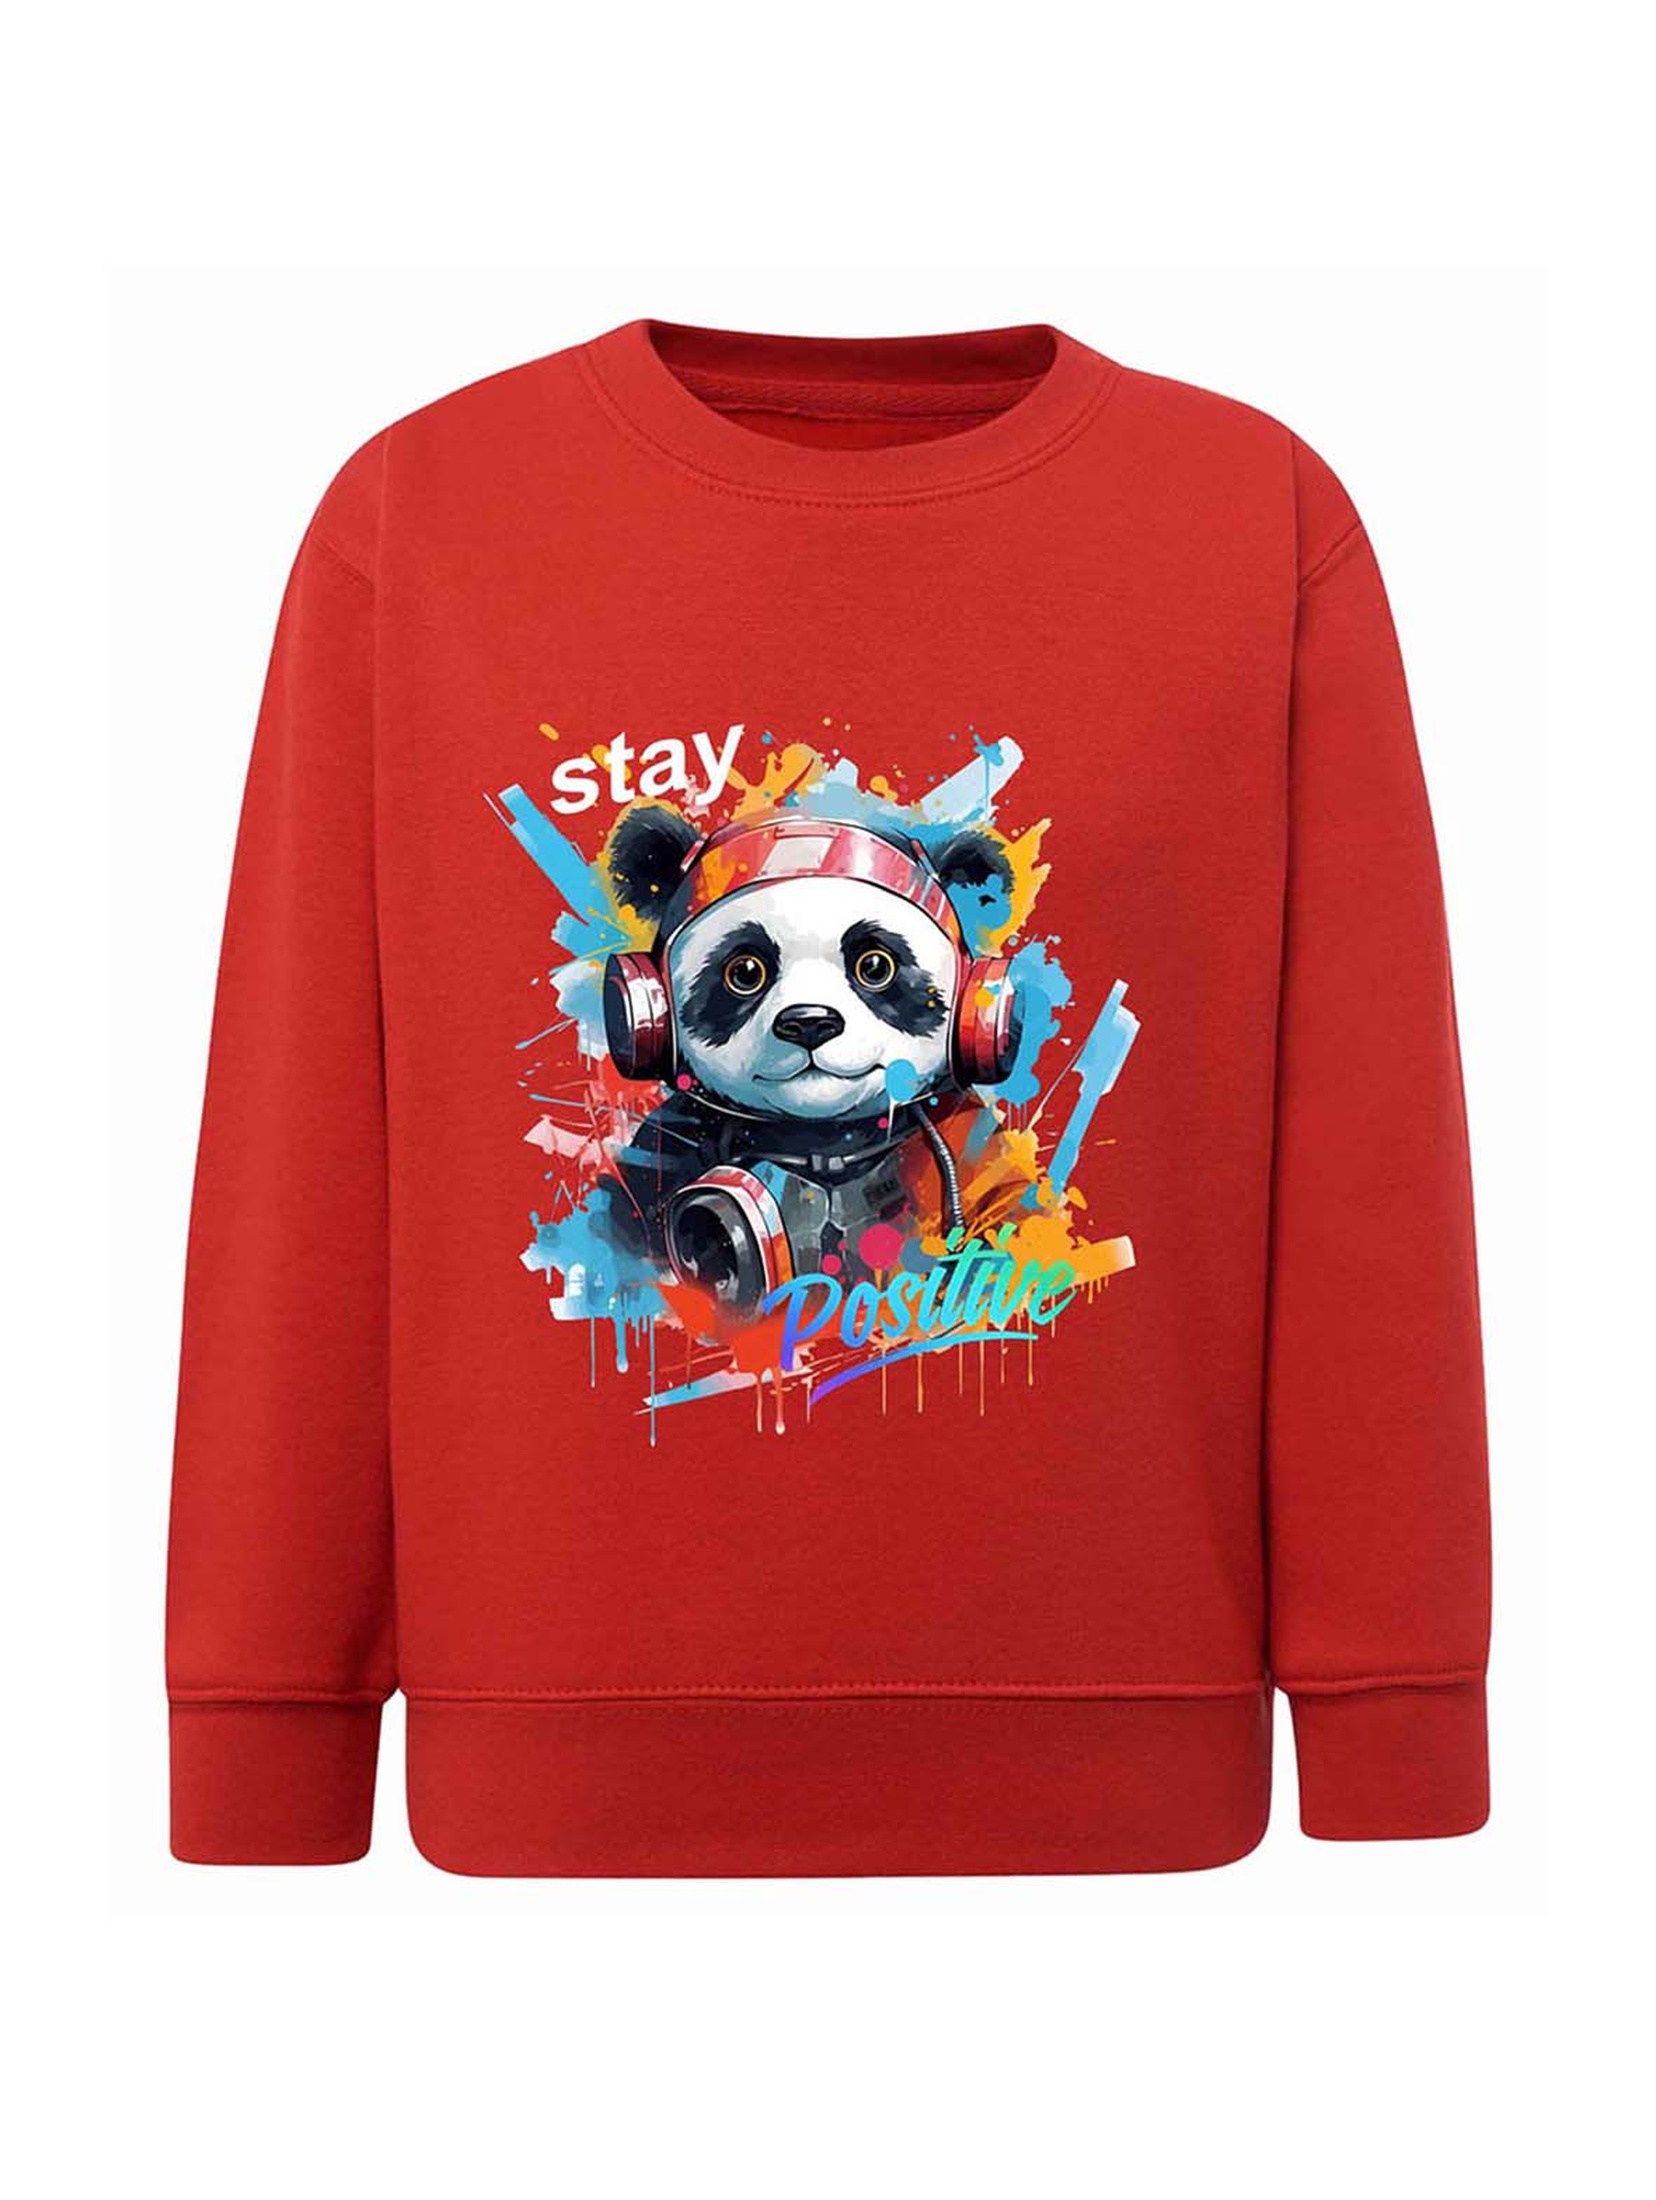 Czerwona chłopięca bluza z nadrukiem - Panda